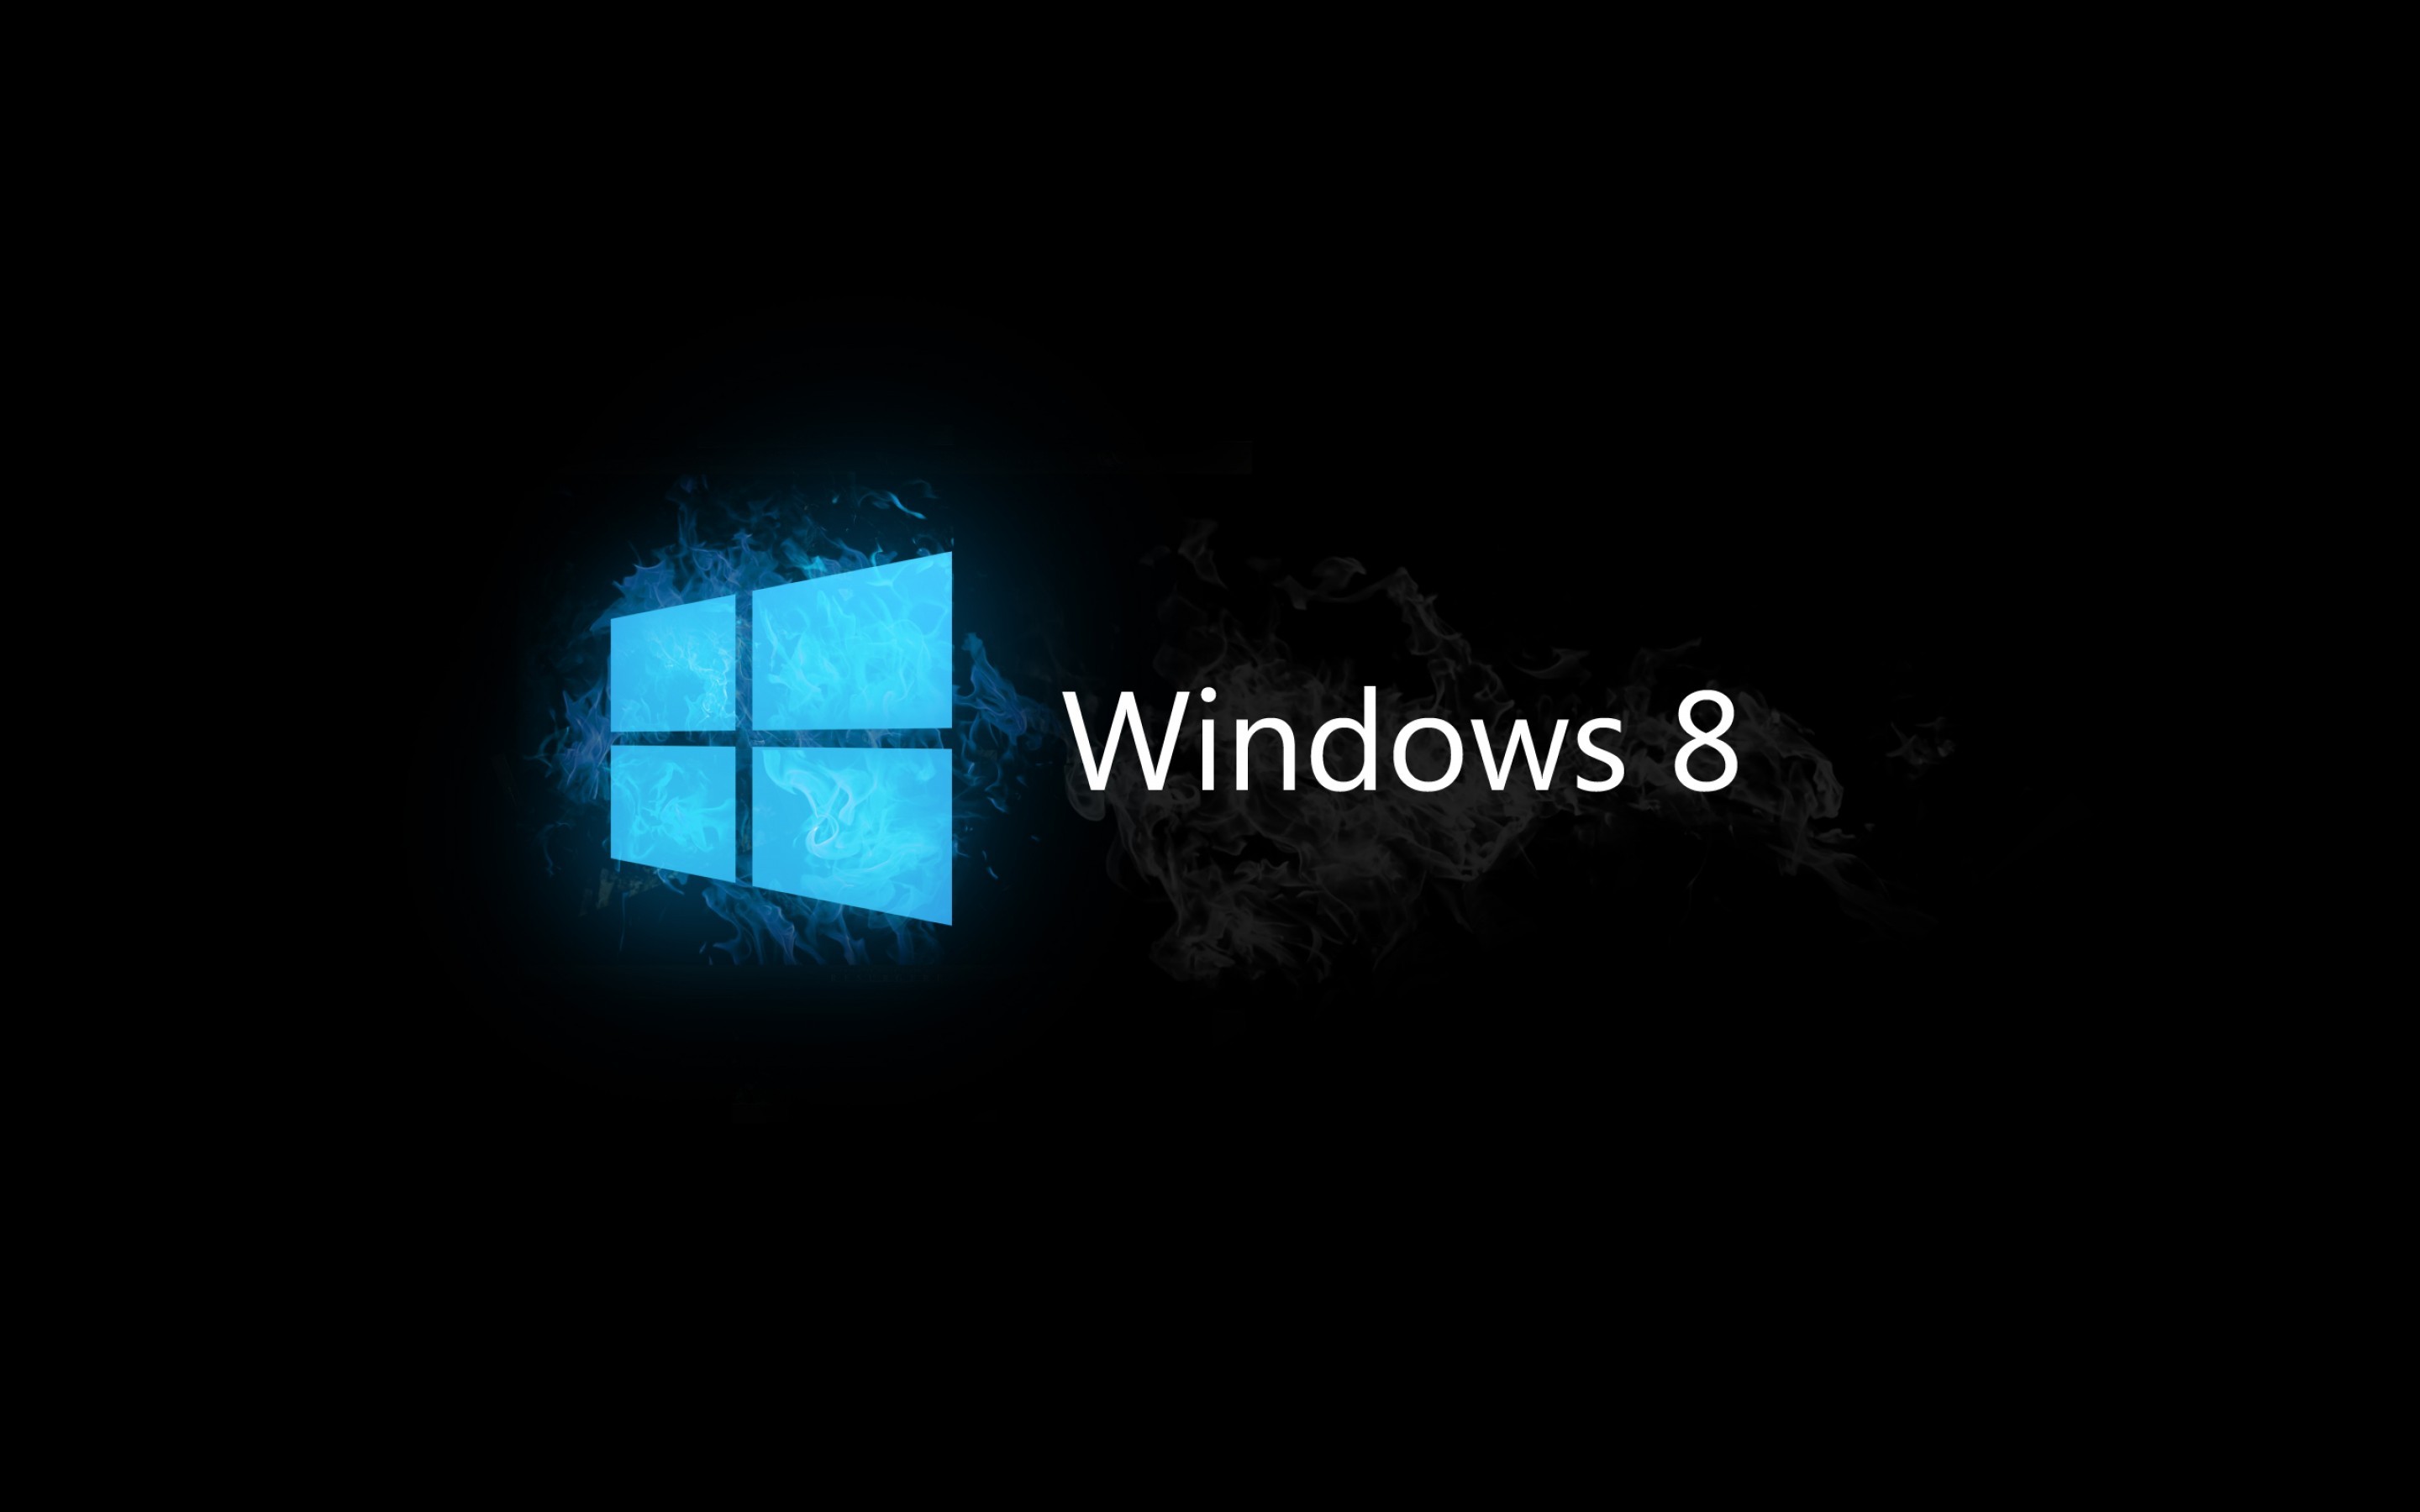 Hình nền Windows 8 HD sẽ làm cho màn hình của bạn trở nên sống động và rực rỡ hơn bao giờ hết. Hãy tận hưởng những hình ảnh tuyệt đẹp này để biến chiếc máy tính của bạn thành một tác phẩm nghệ thuật sống động!